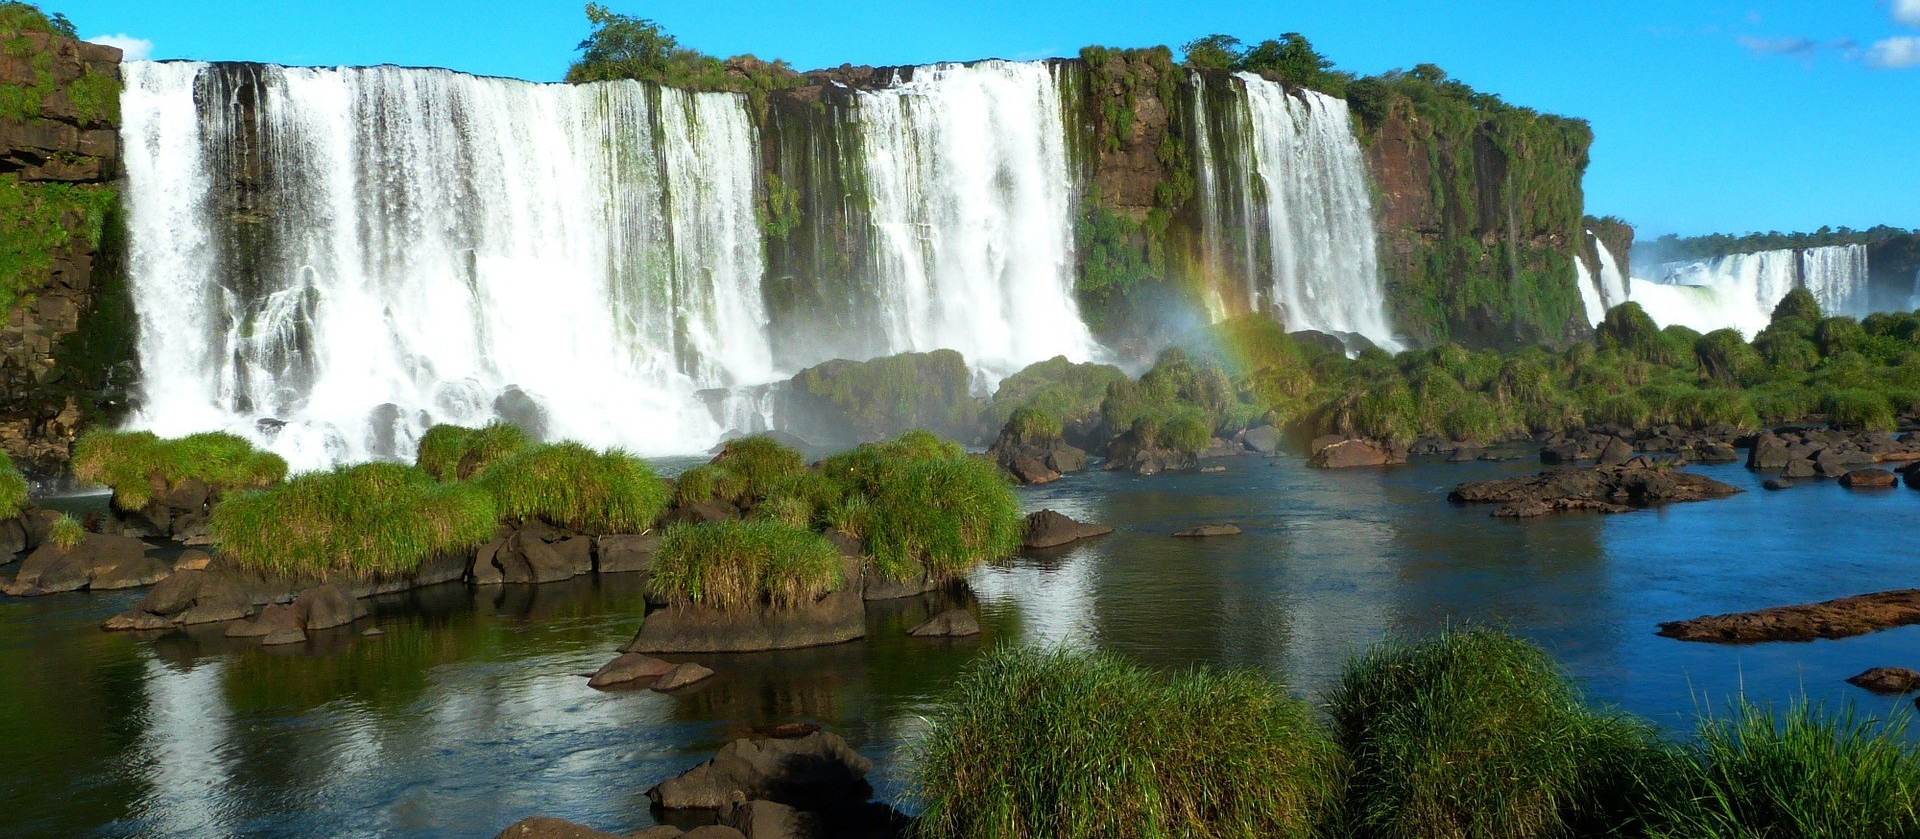 Turismo em Foz do Iguaçu apresenta crescimento 